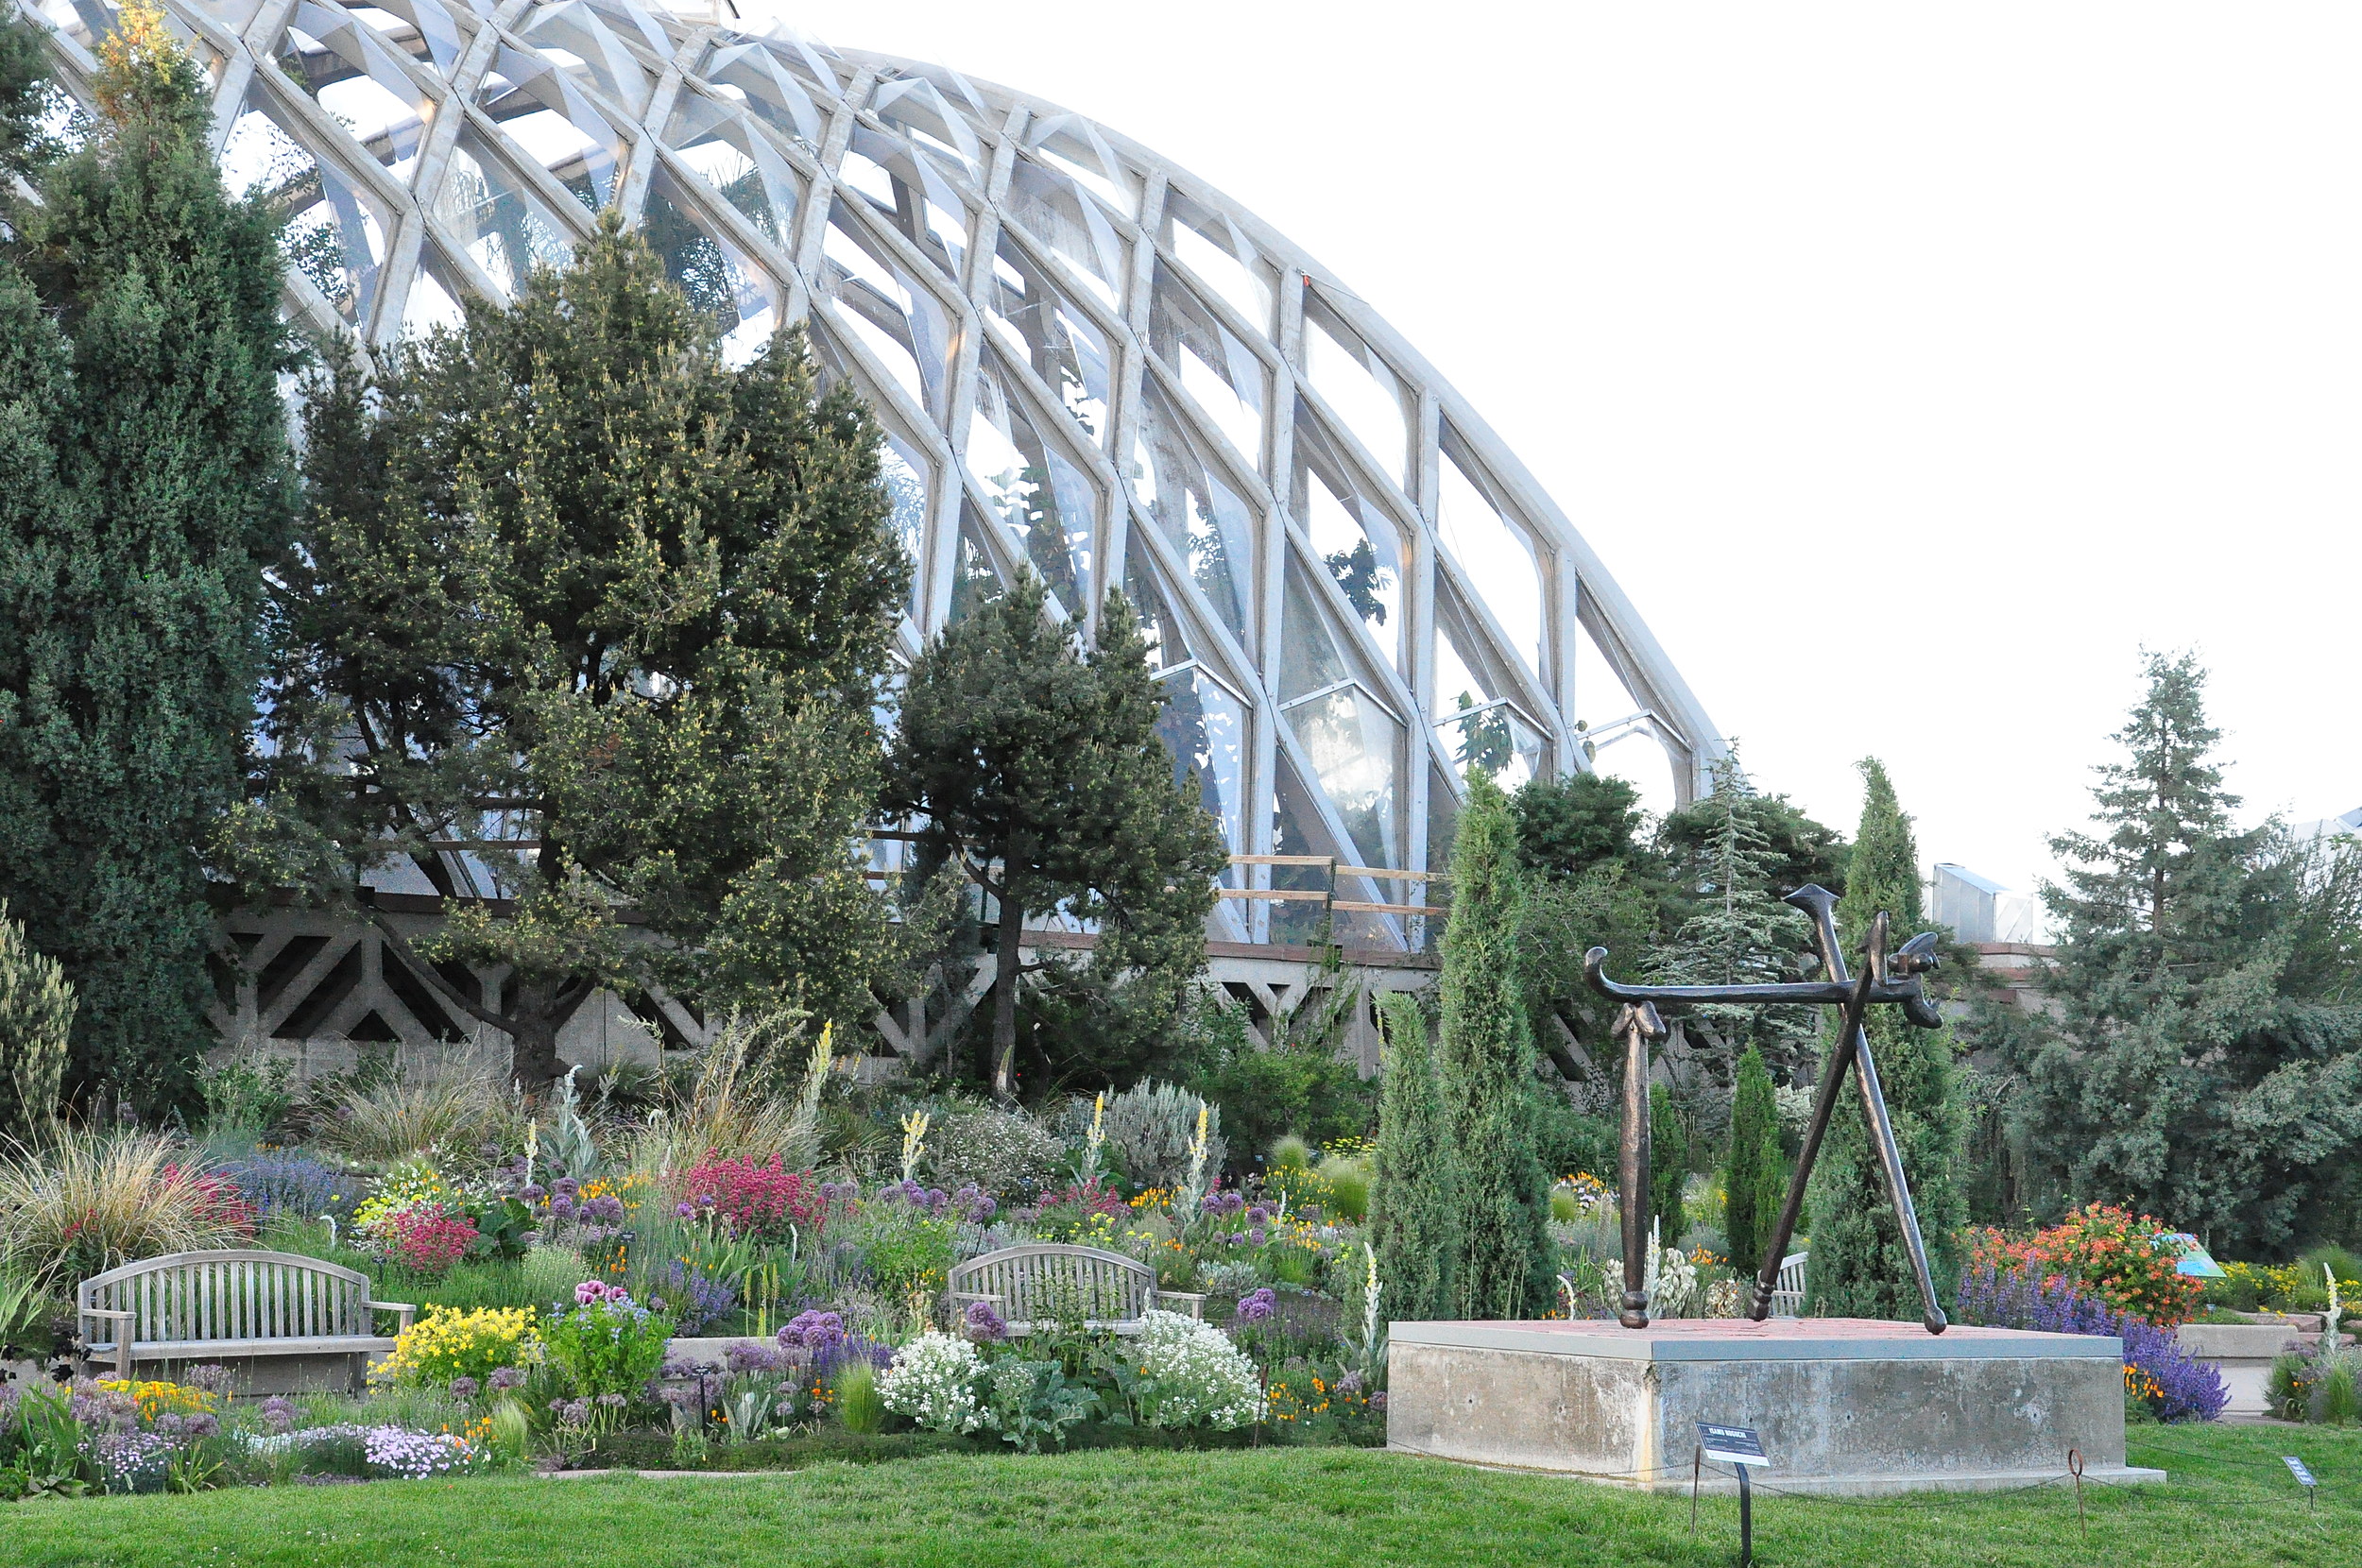 Denver Botanic Gardens Summer Concert Series Schedule